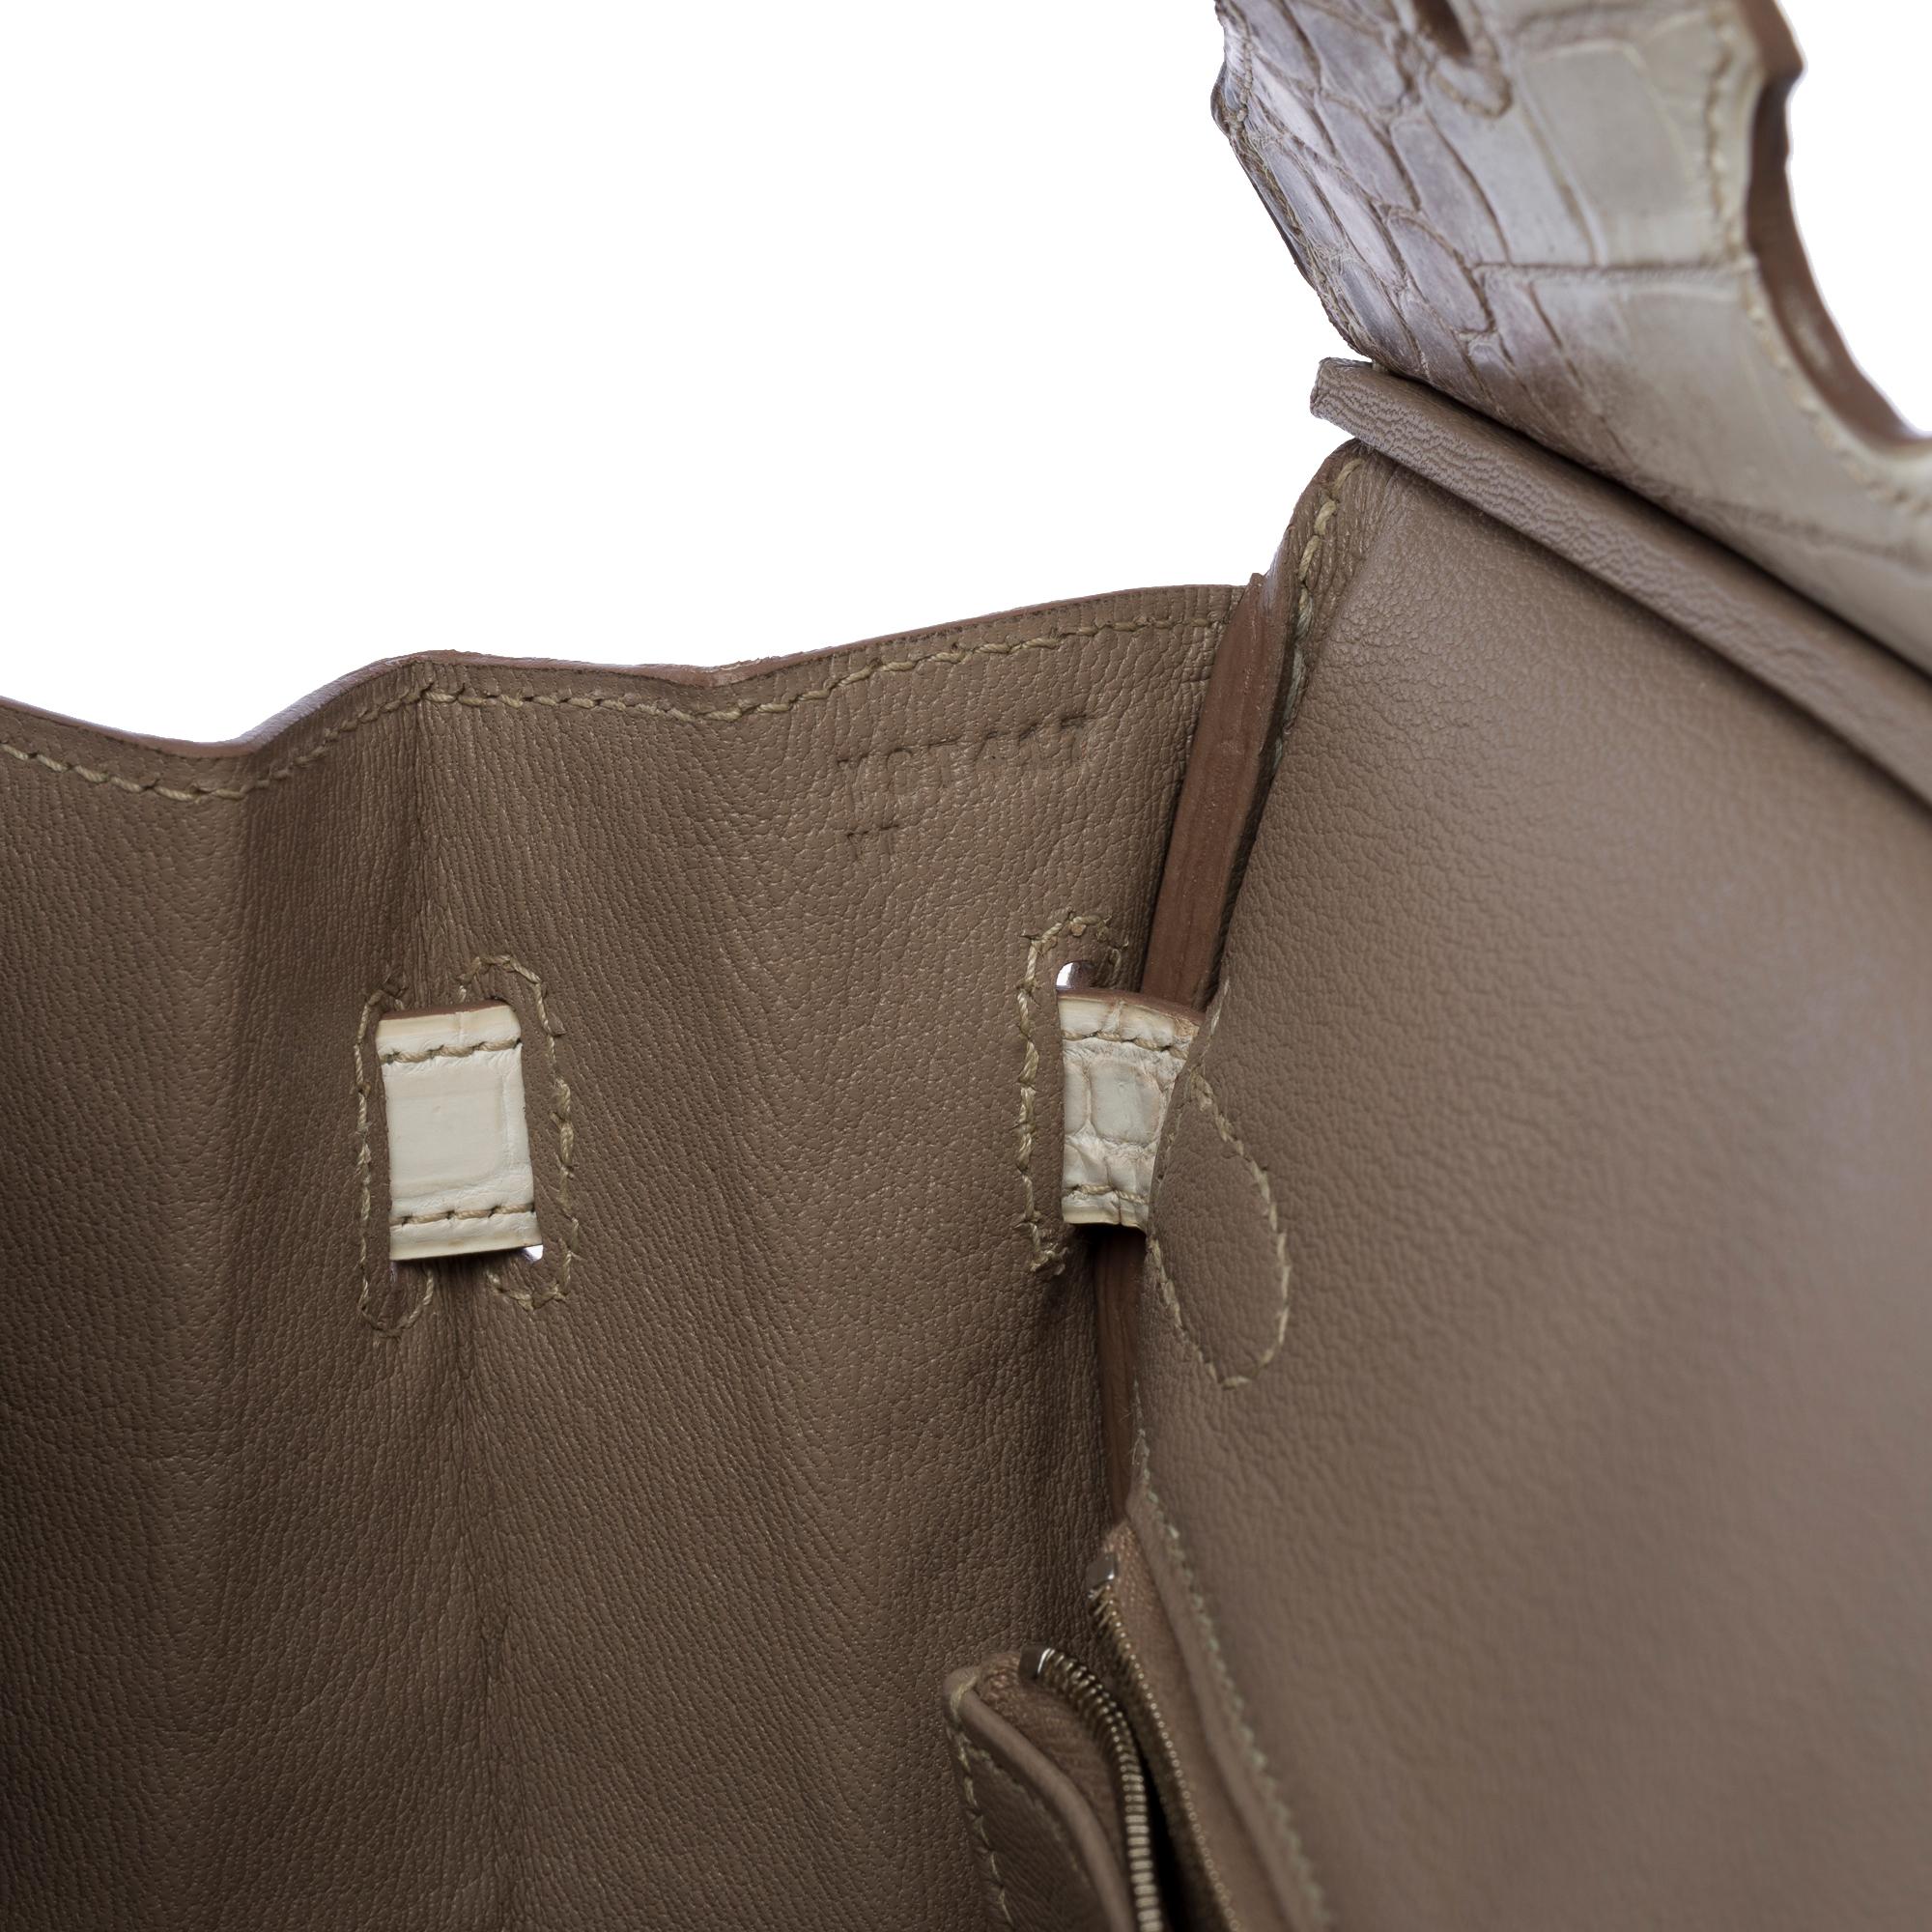 Seltene neue Hermès Birkin 30 Himalaya Handtasche in weißem Nilkrokodilleder, SHW 4